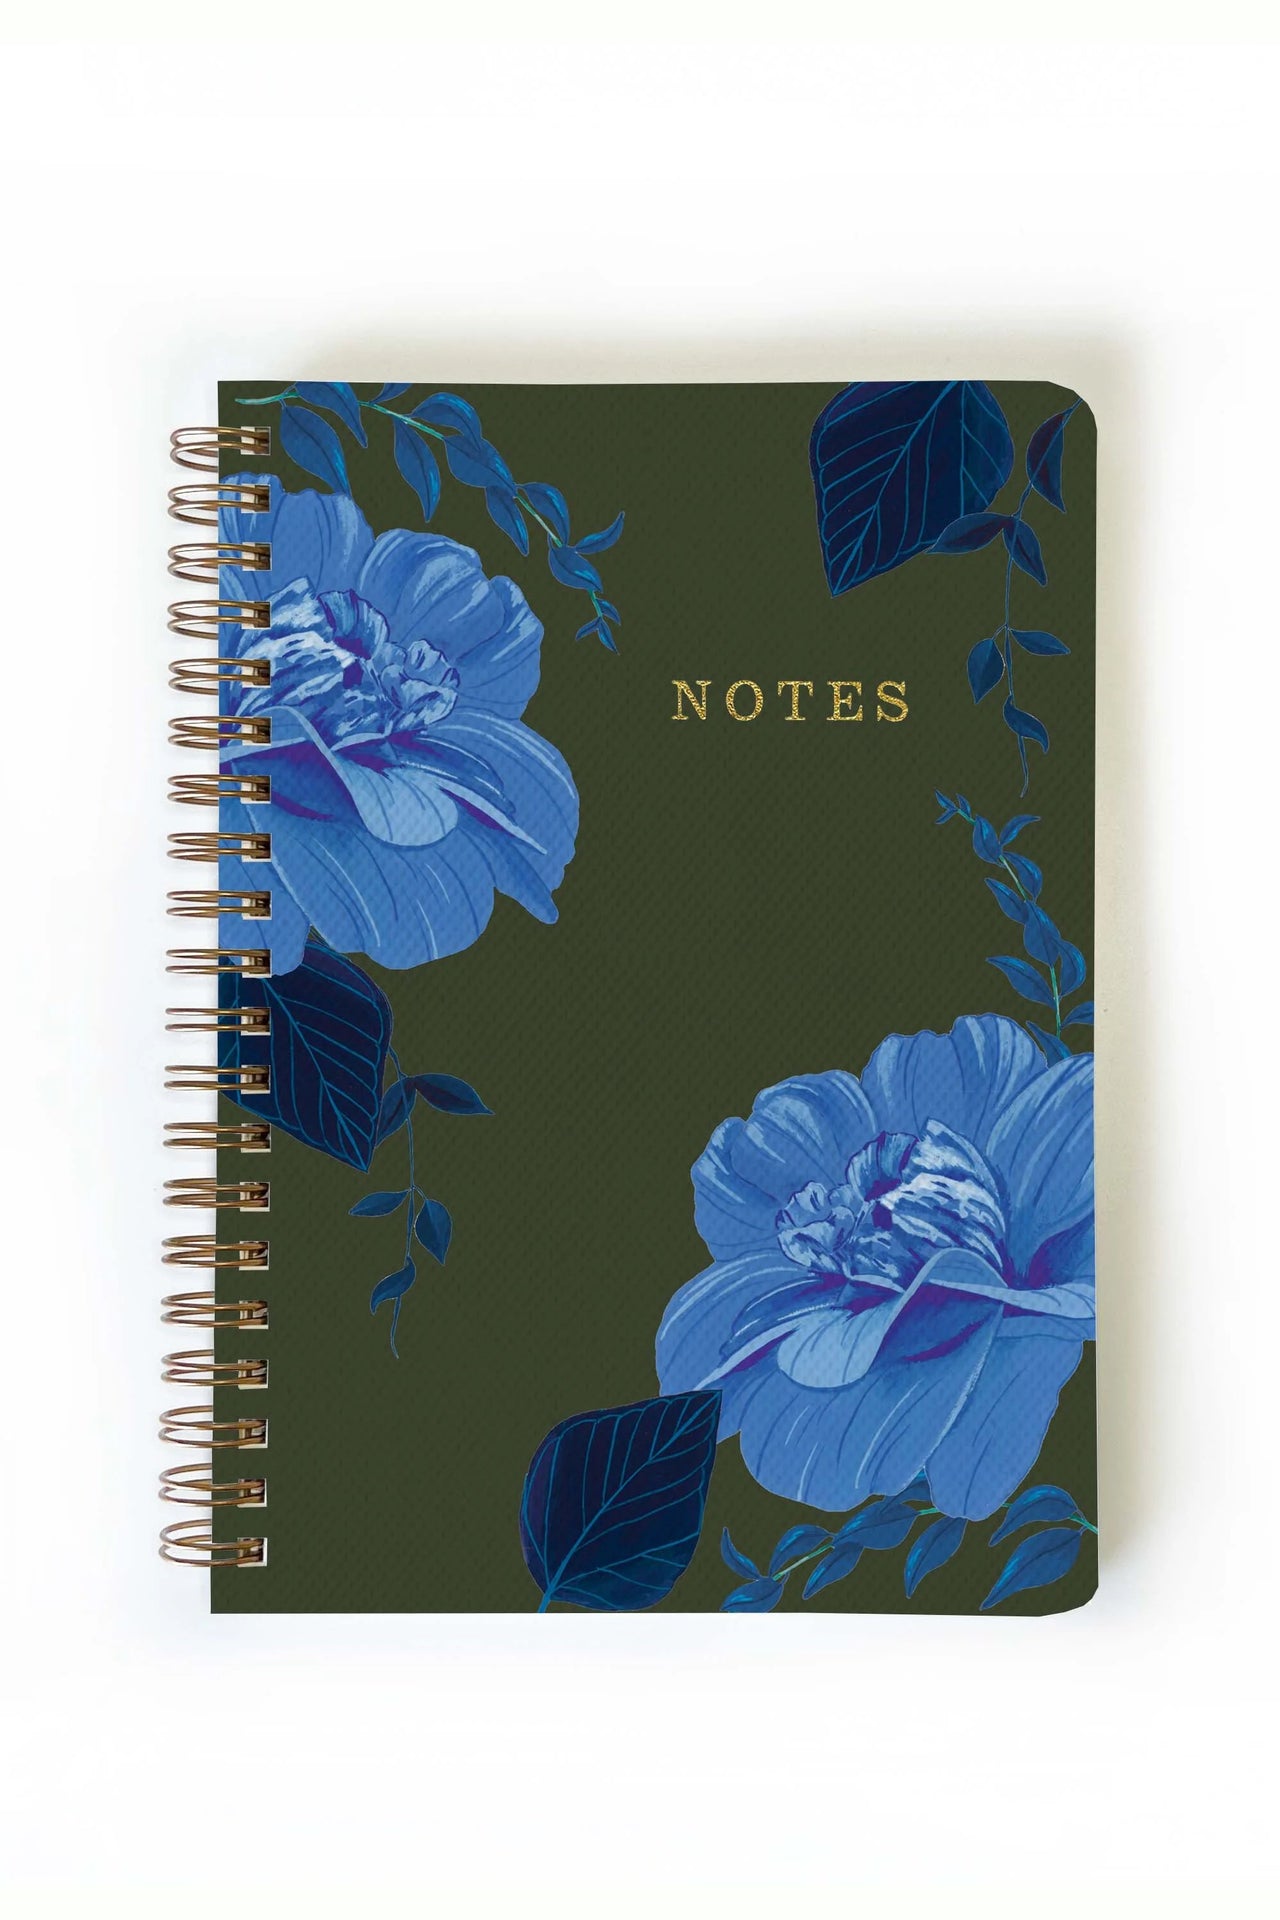 Twilight Notebook Journal